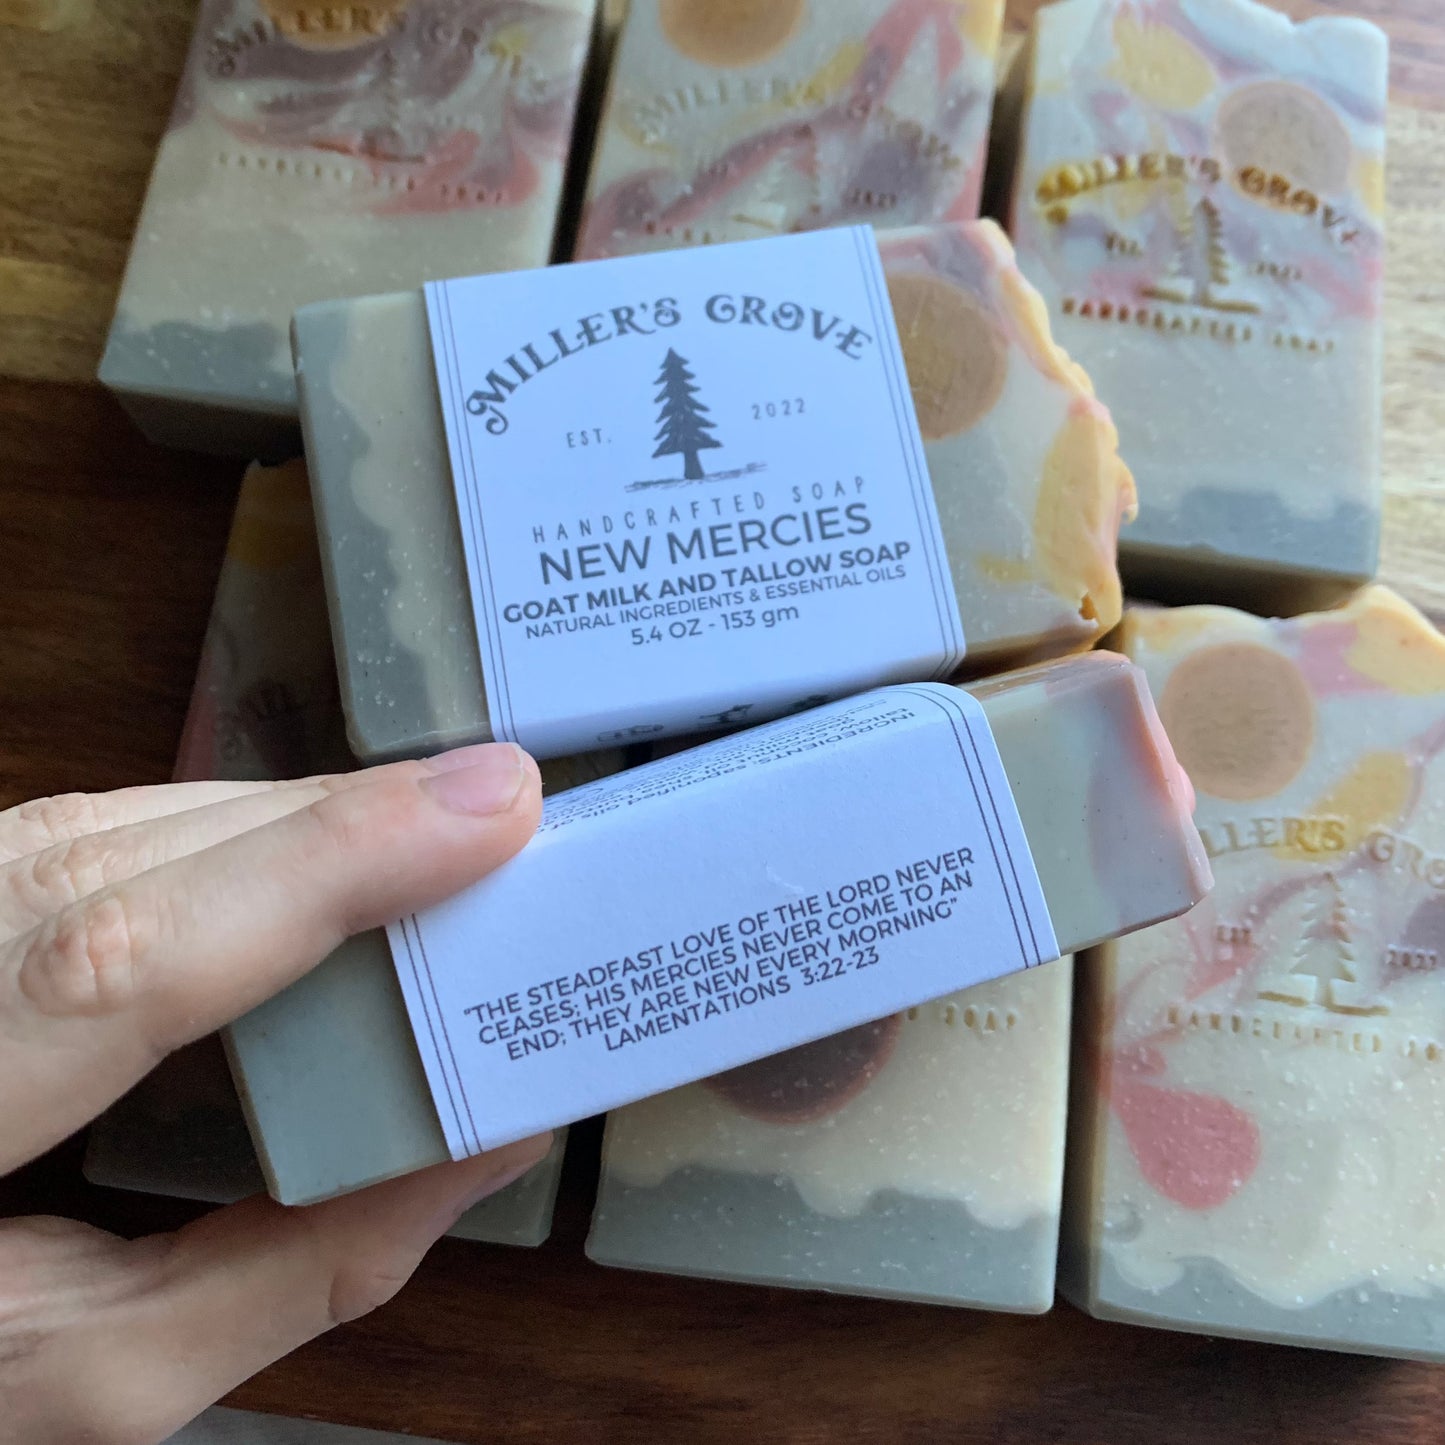 NEW MERCIES Bar Soap